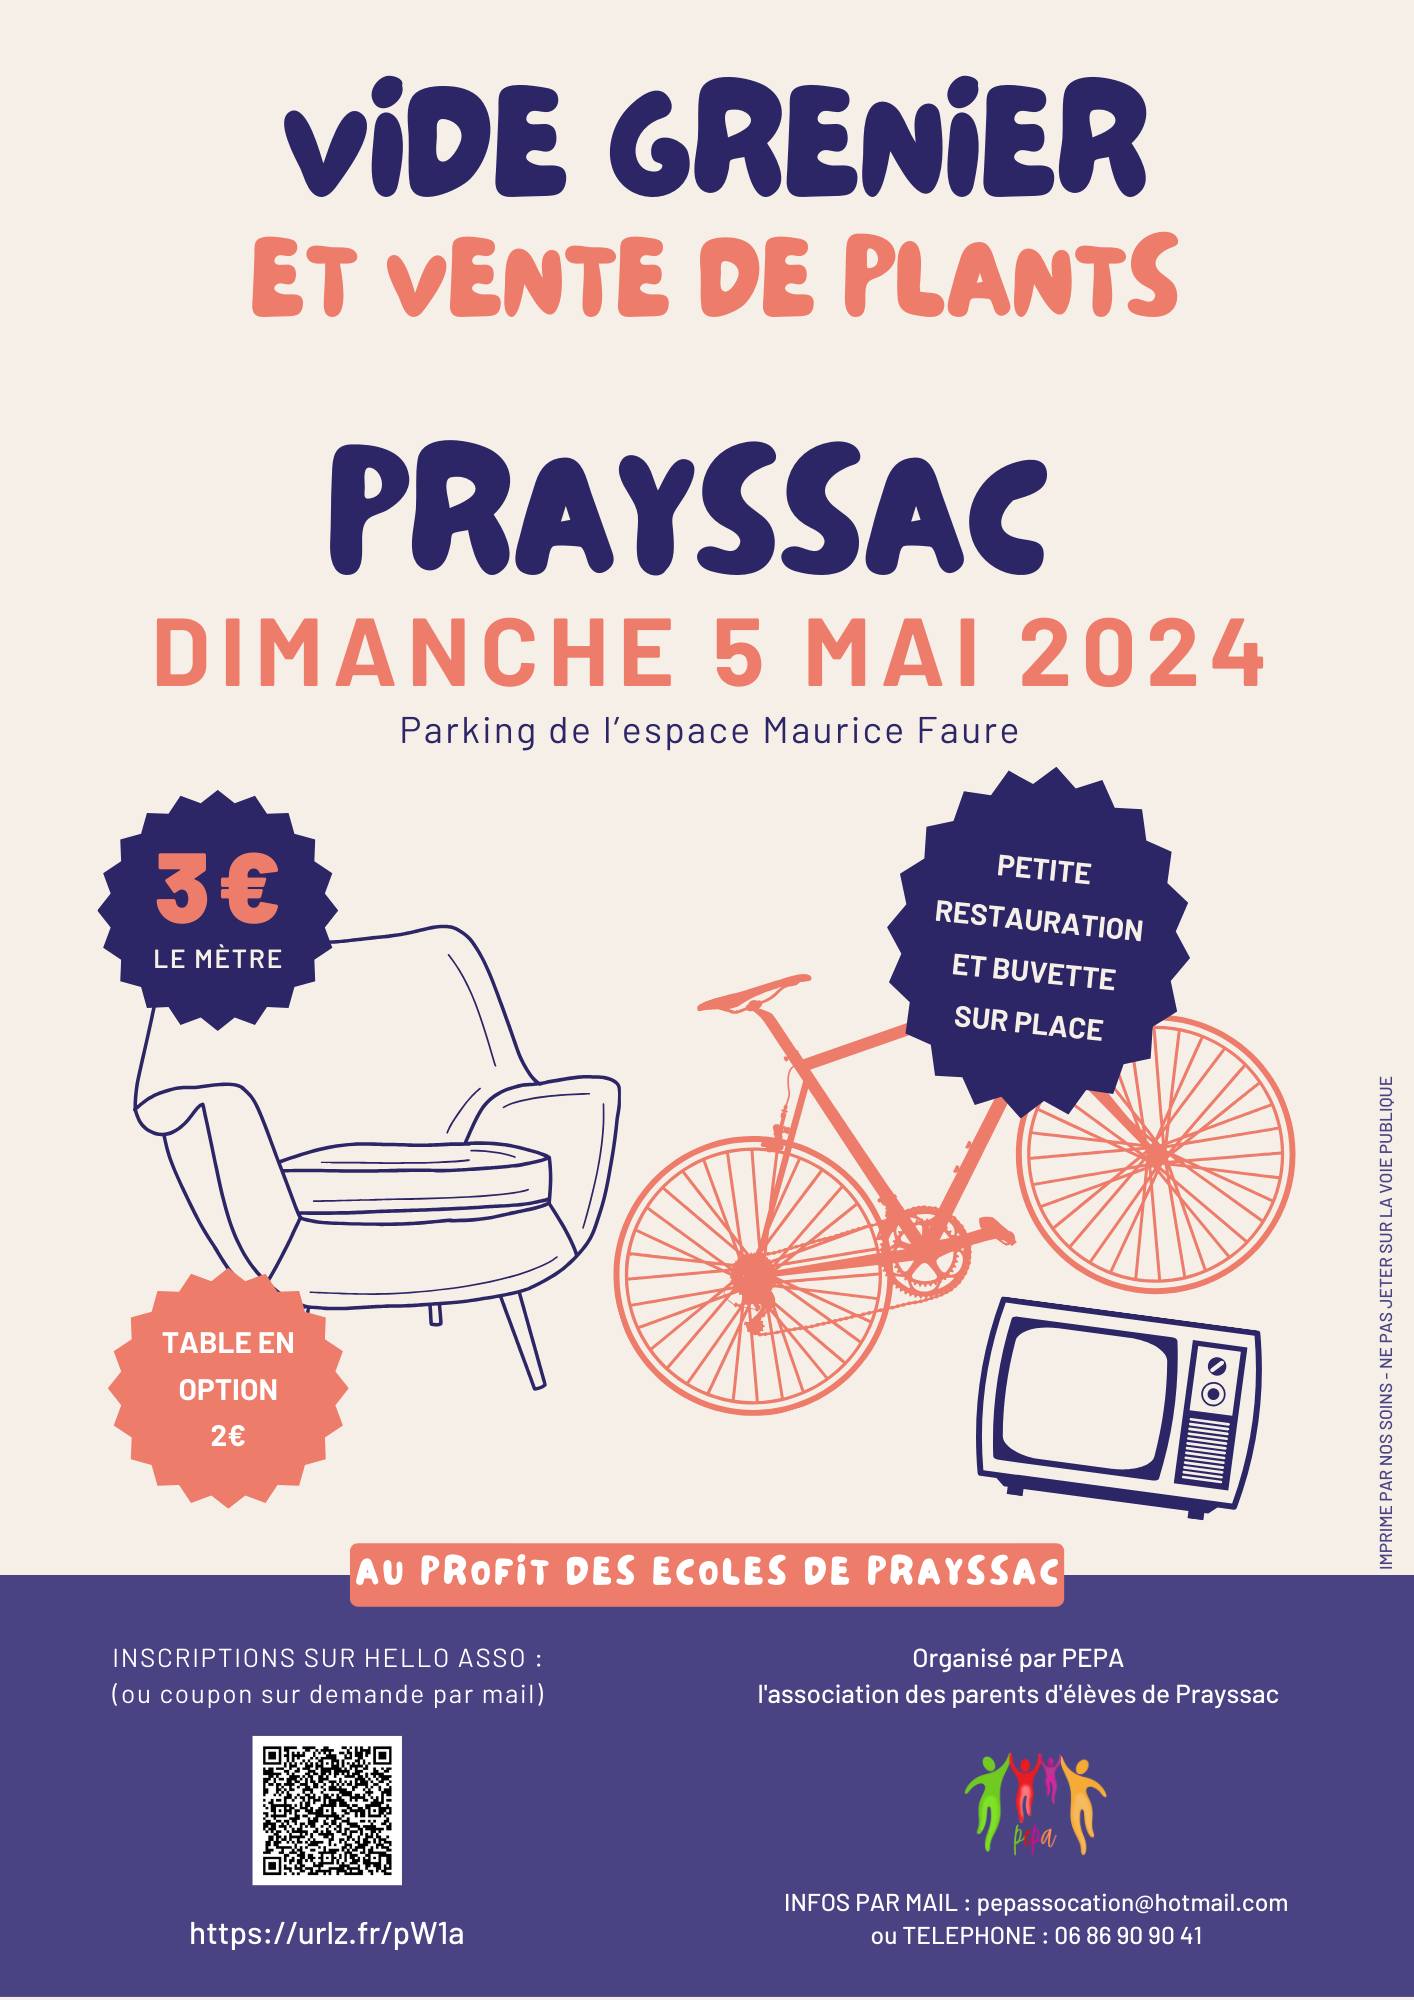 Vide-greniers et vente de plants à Prayssac Le 5 mai 2024